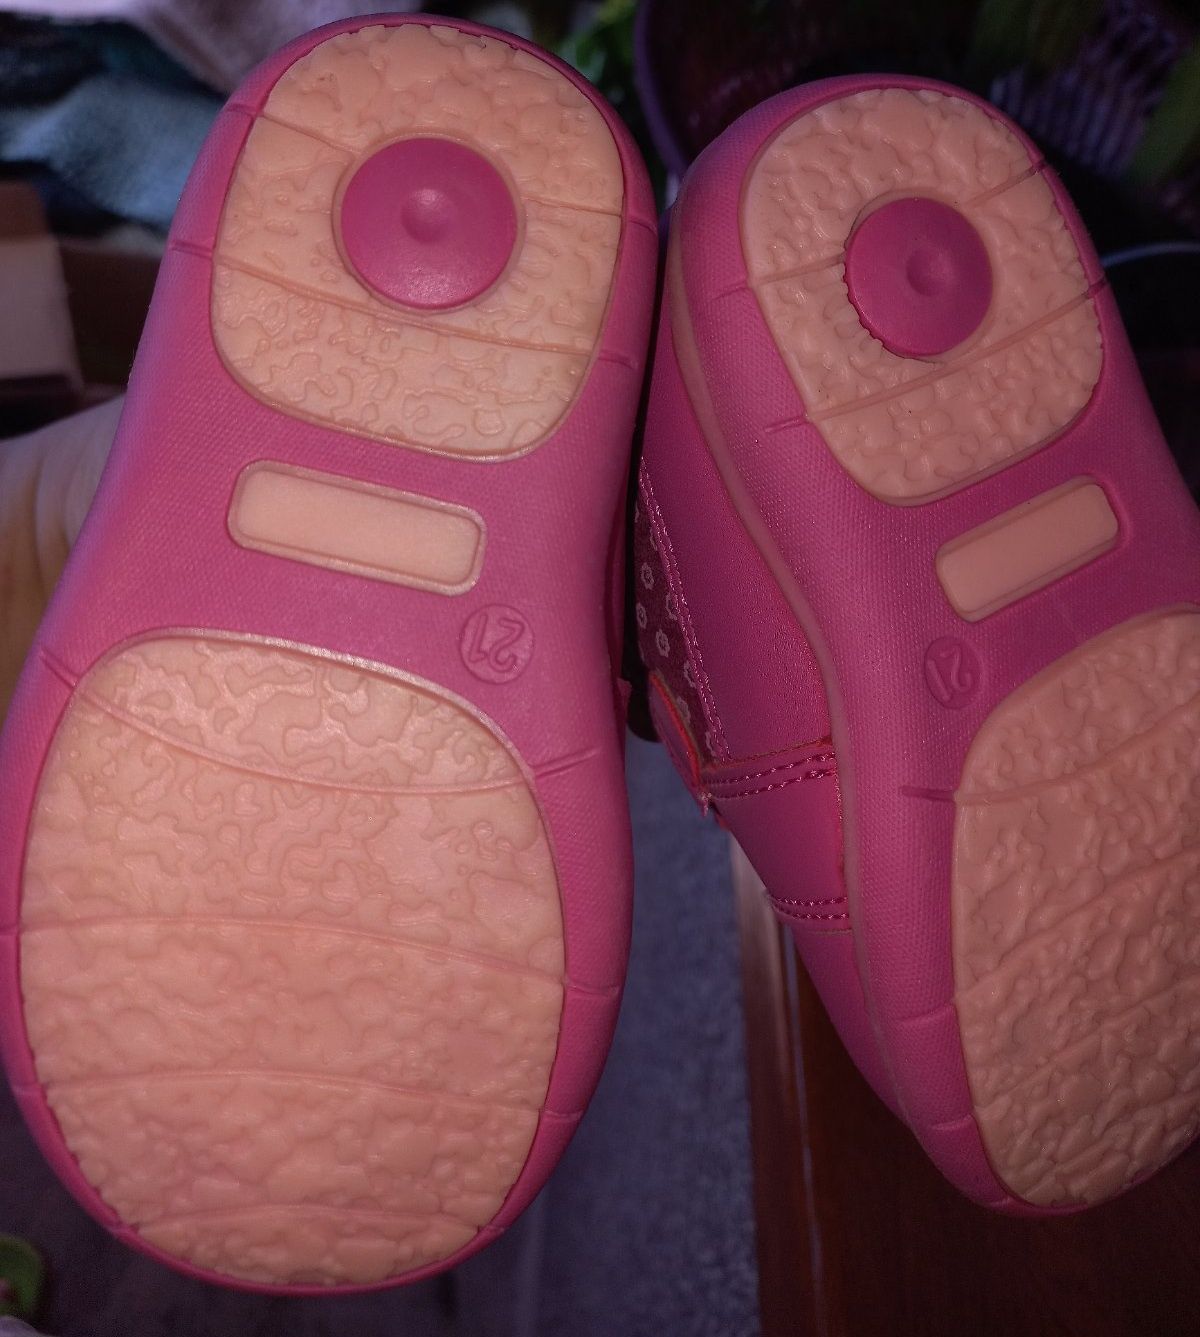 Продам новые ботинки детские на девочку в коробке
21 размер
Фирма:Wojt